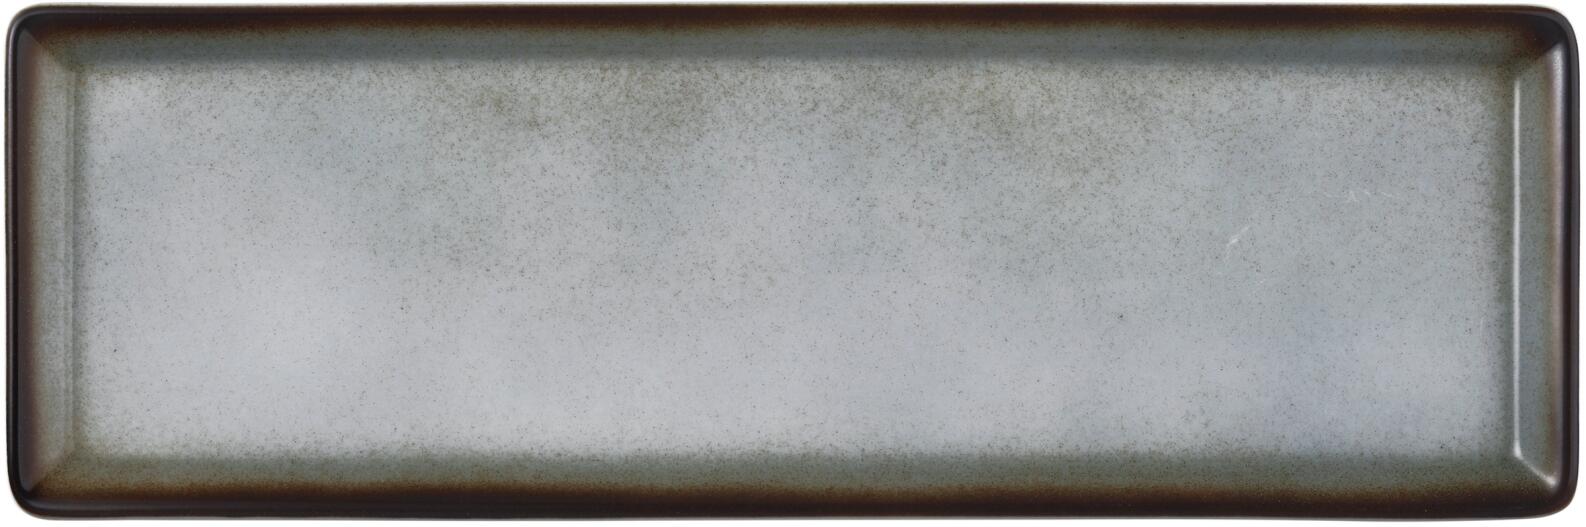 Seltmann Weiden Buffet-Gourmet Platte 32 5x10 8 cm grau